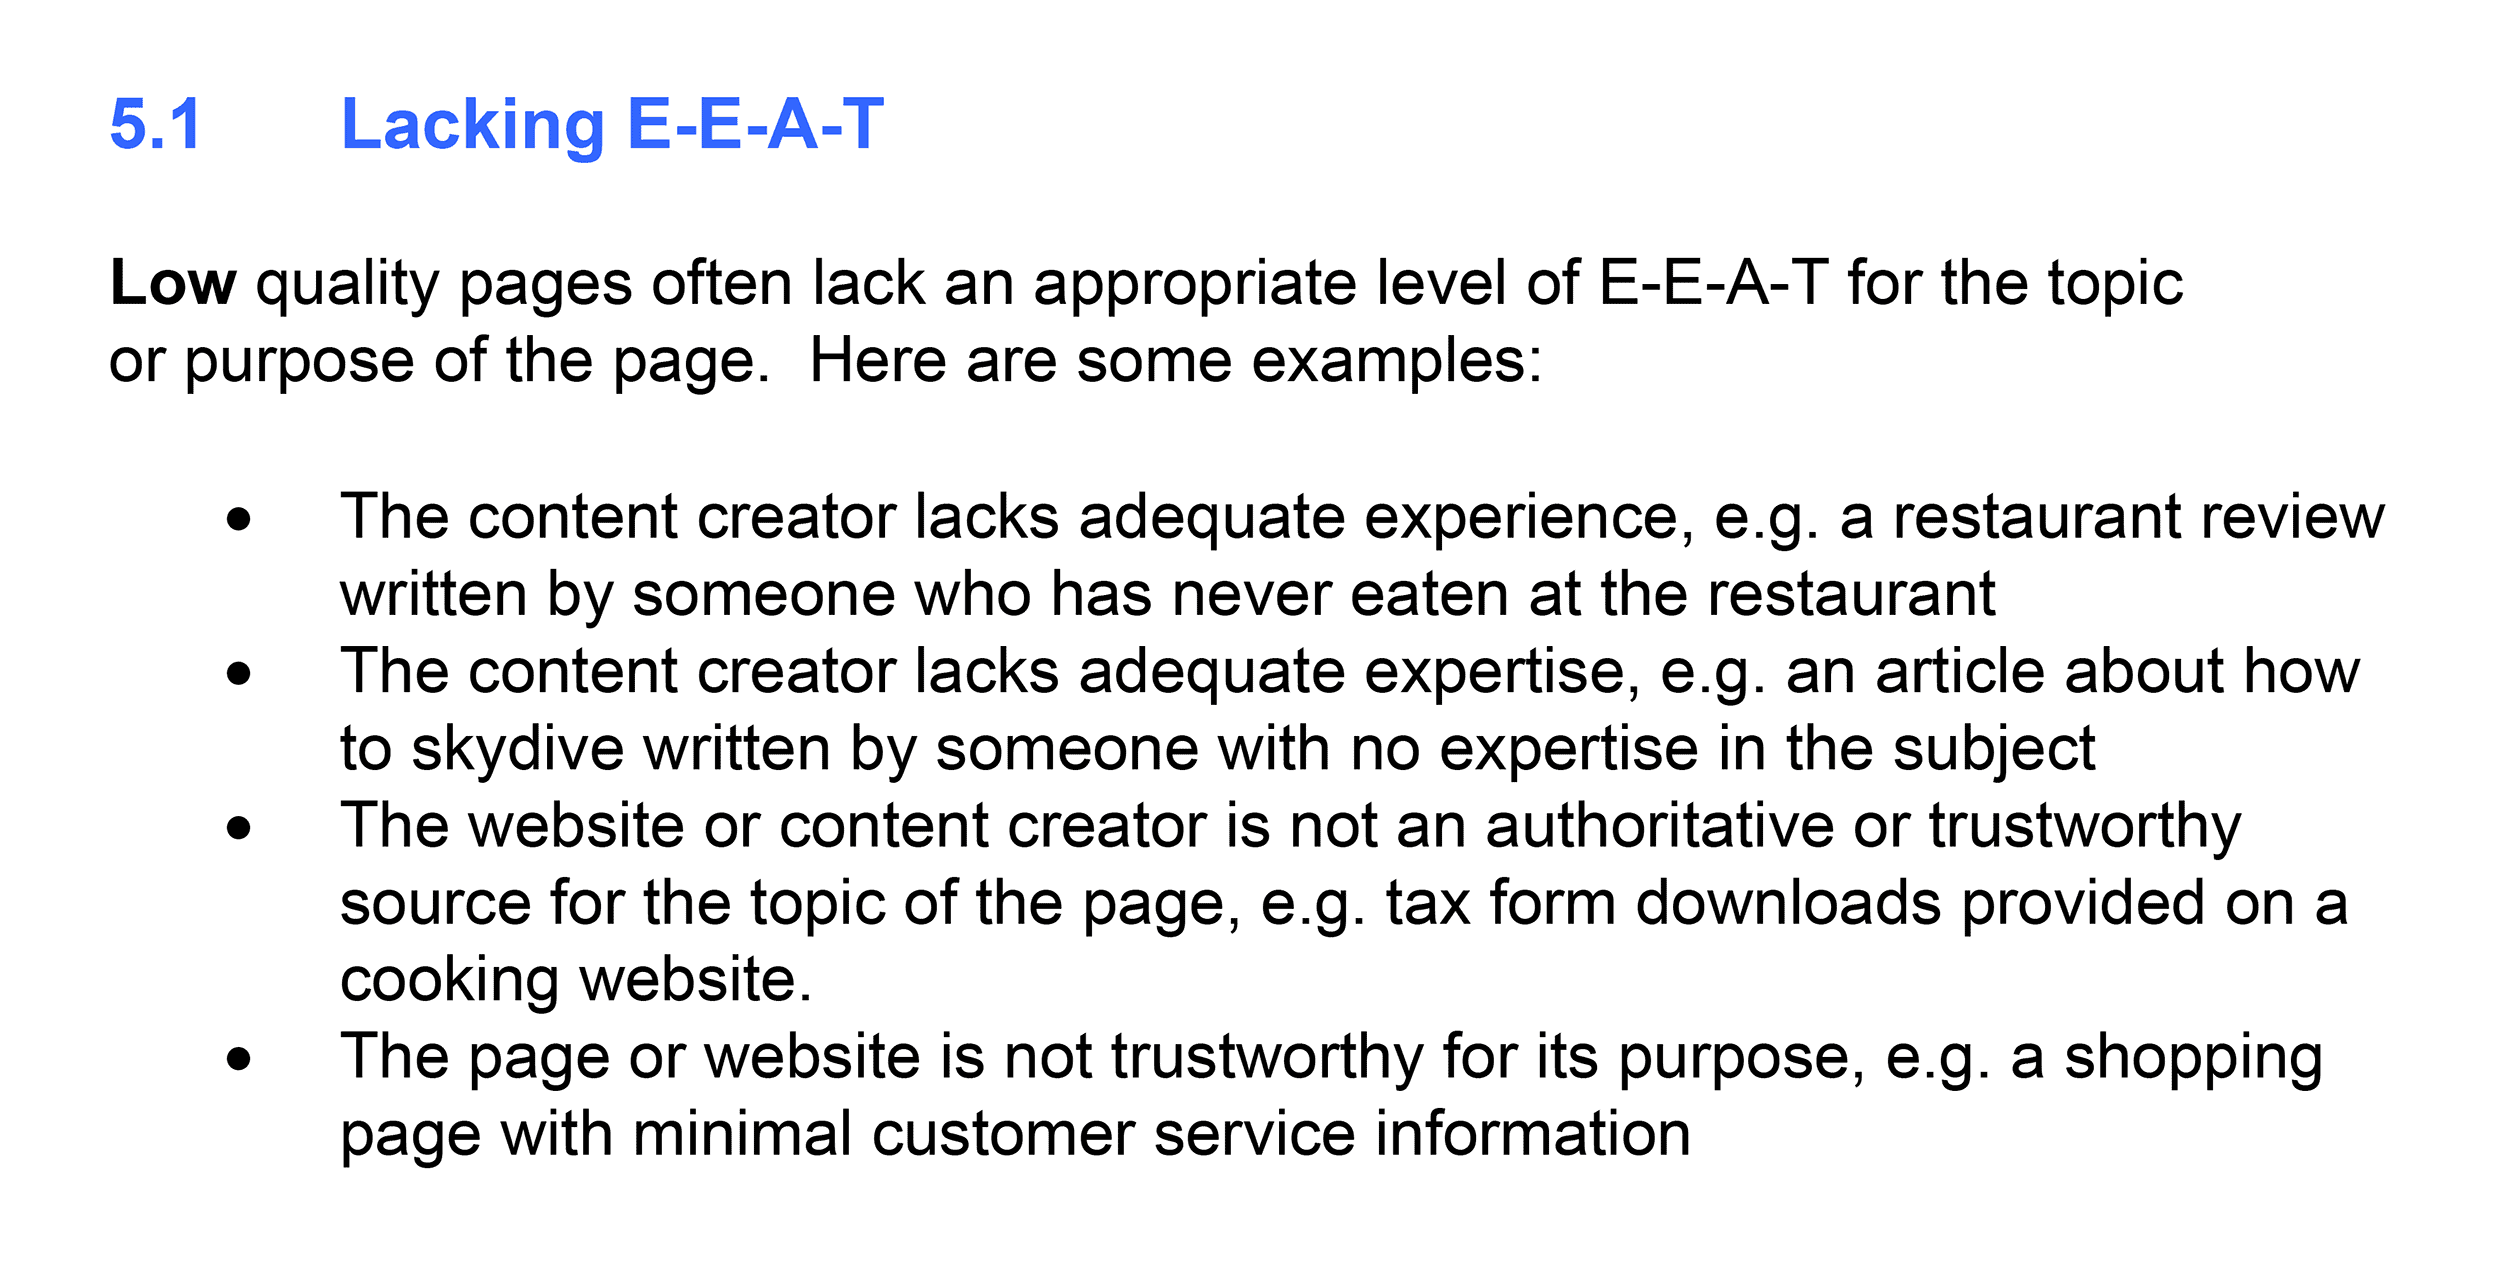 Lacking E-A-T